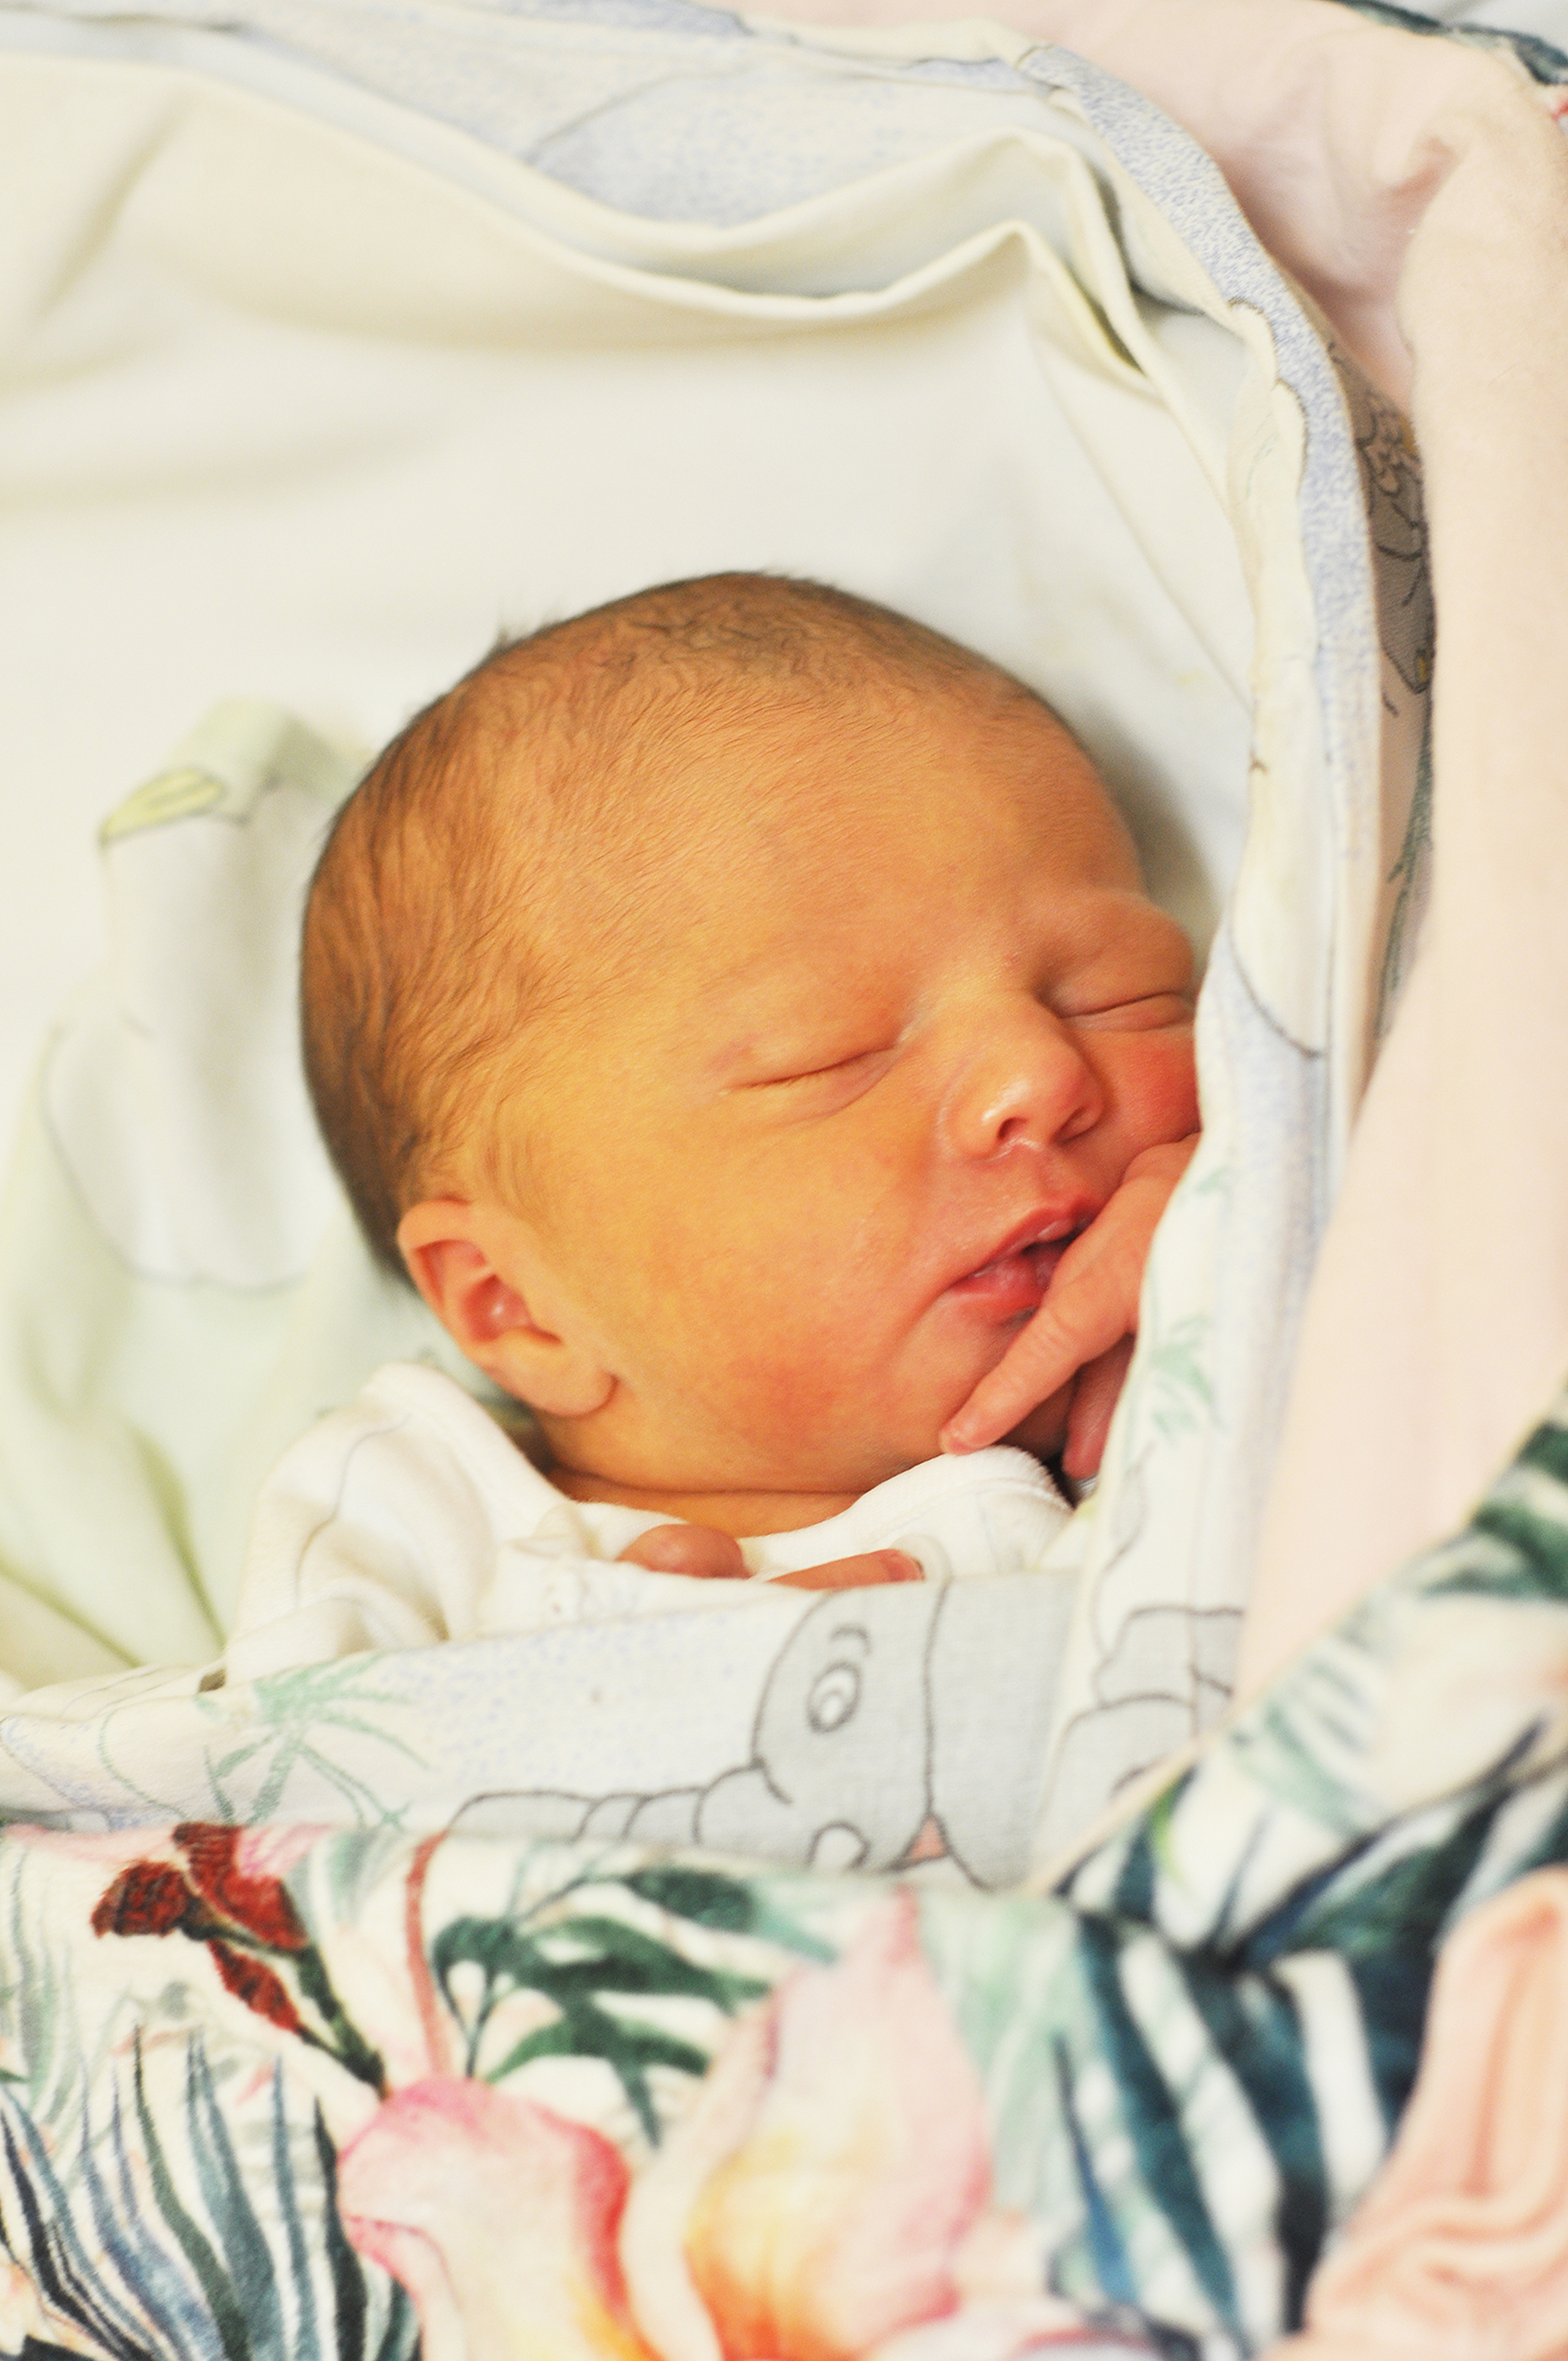 Liwia Pelczar jest córeczką Patrycji i Błażeja z Turza. Dziewczynka przyszła na świat 28 stycznia o 15.10. Ważąc 2820 g, mierzyła 51 cm.